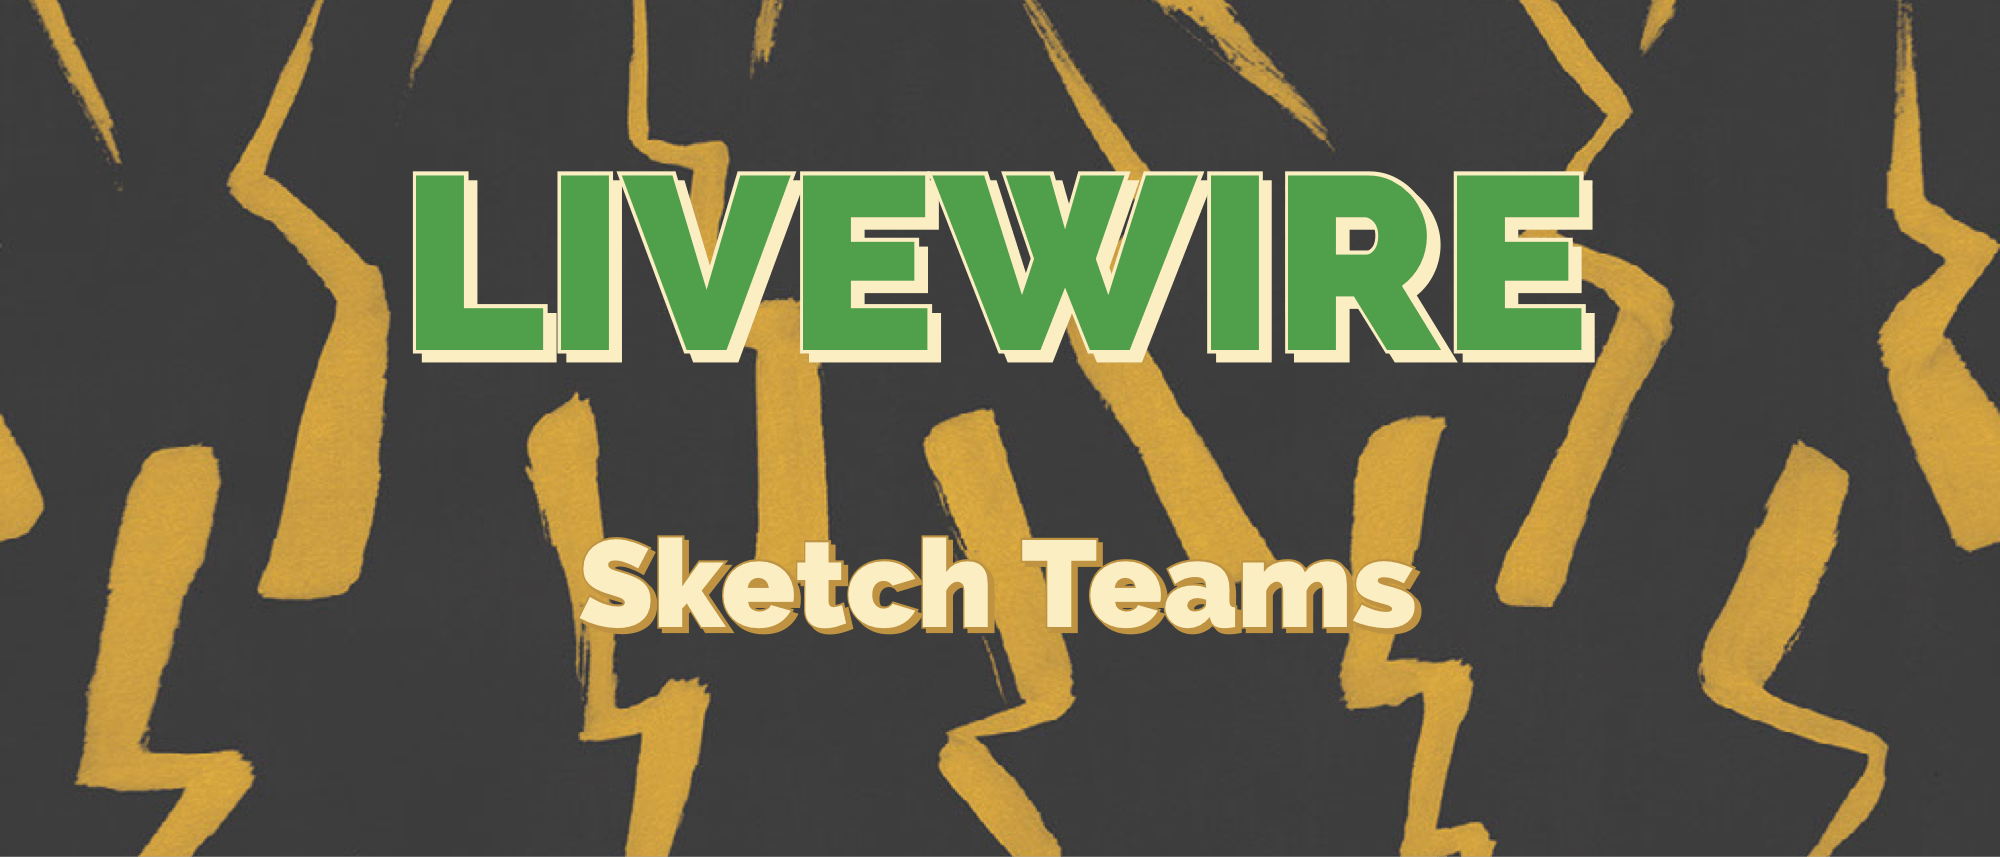 sketch teams image